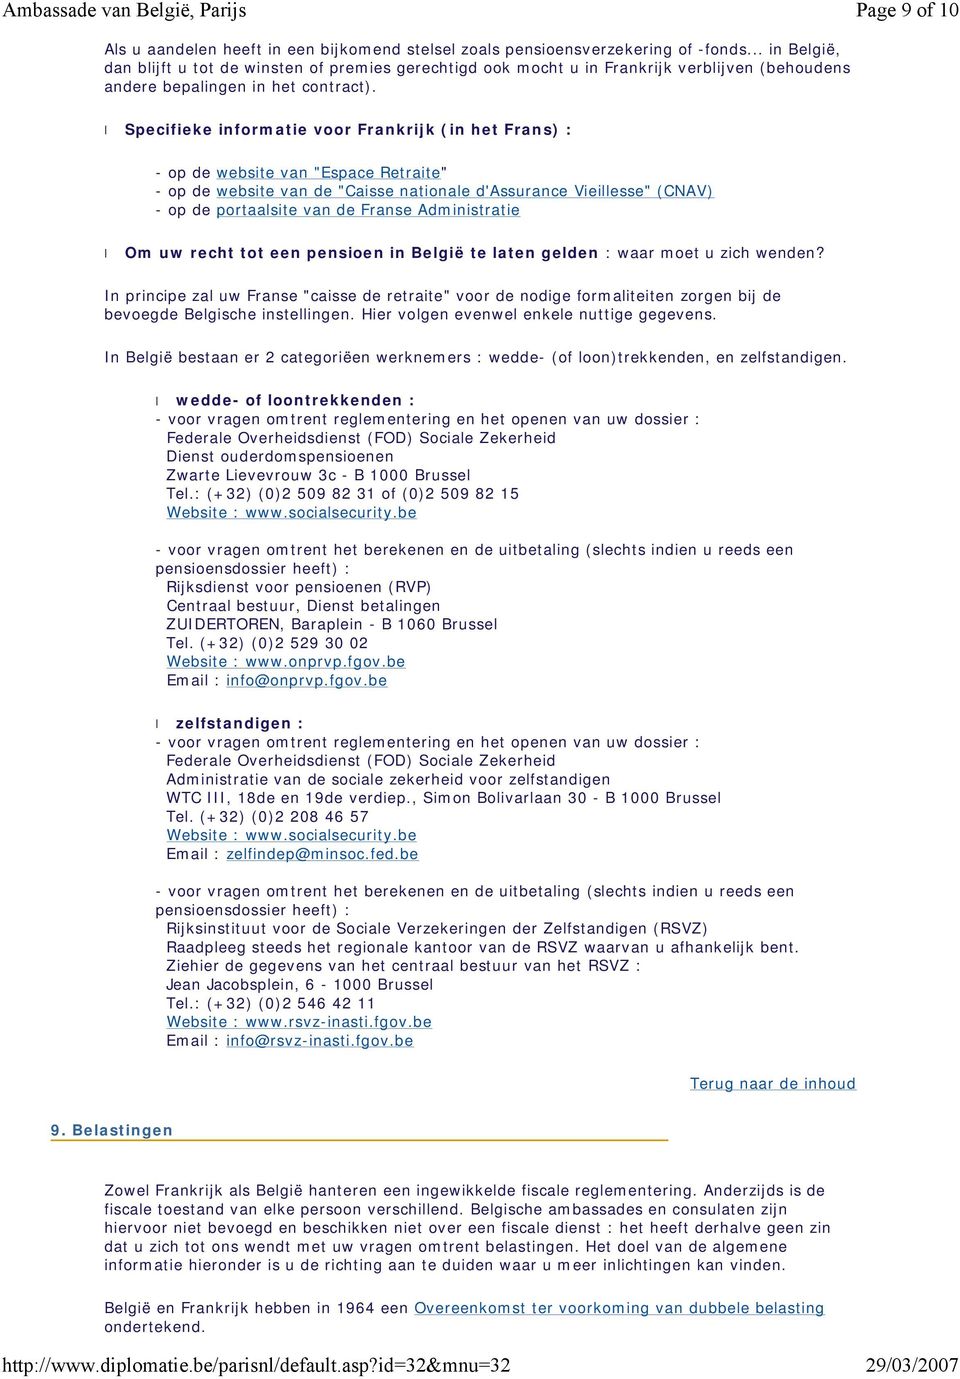 Specifieke informatie voor Frankrijk (in het Frans) : - op de website van "Espace Retraite" - op de website van de "Caisse nationale d'assurance Vieillesse" (CNAV) - op de portaalsite van de Franse